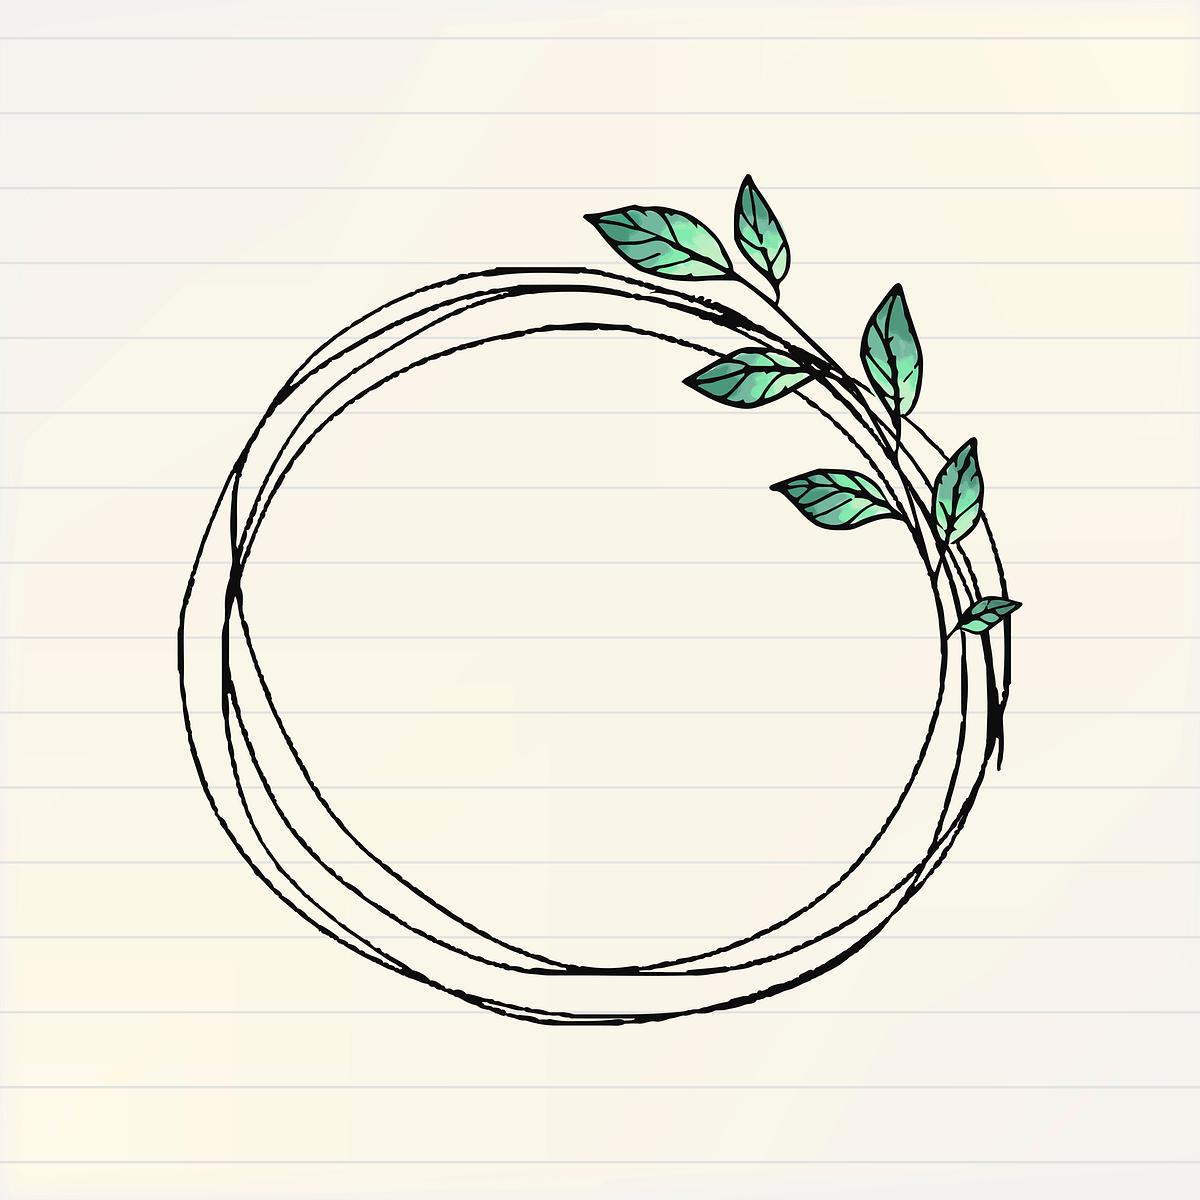 Botanical frame sticker, doodle illustration | Free PSD - rawpixel